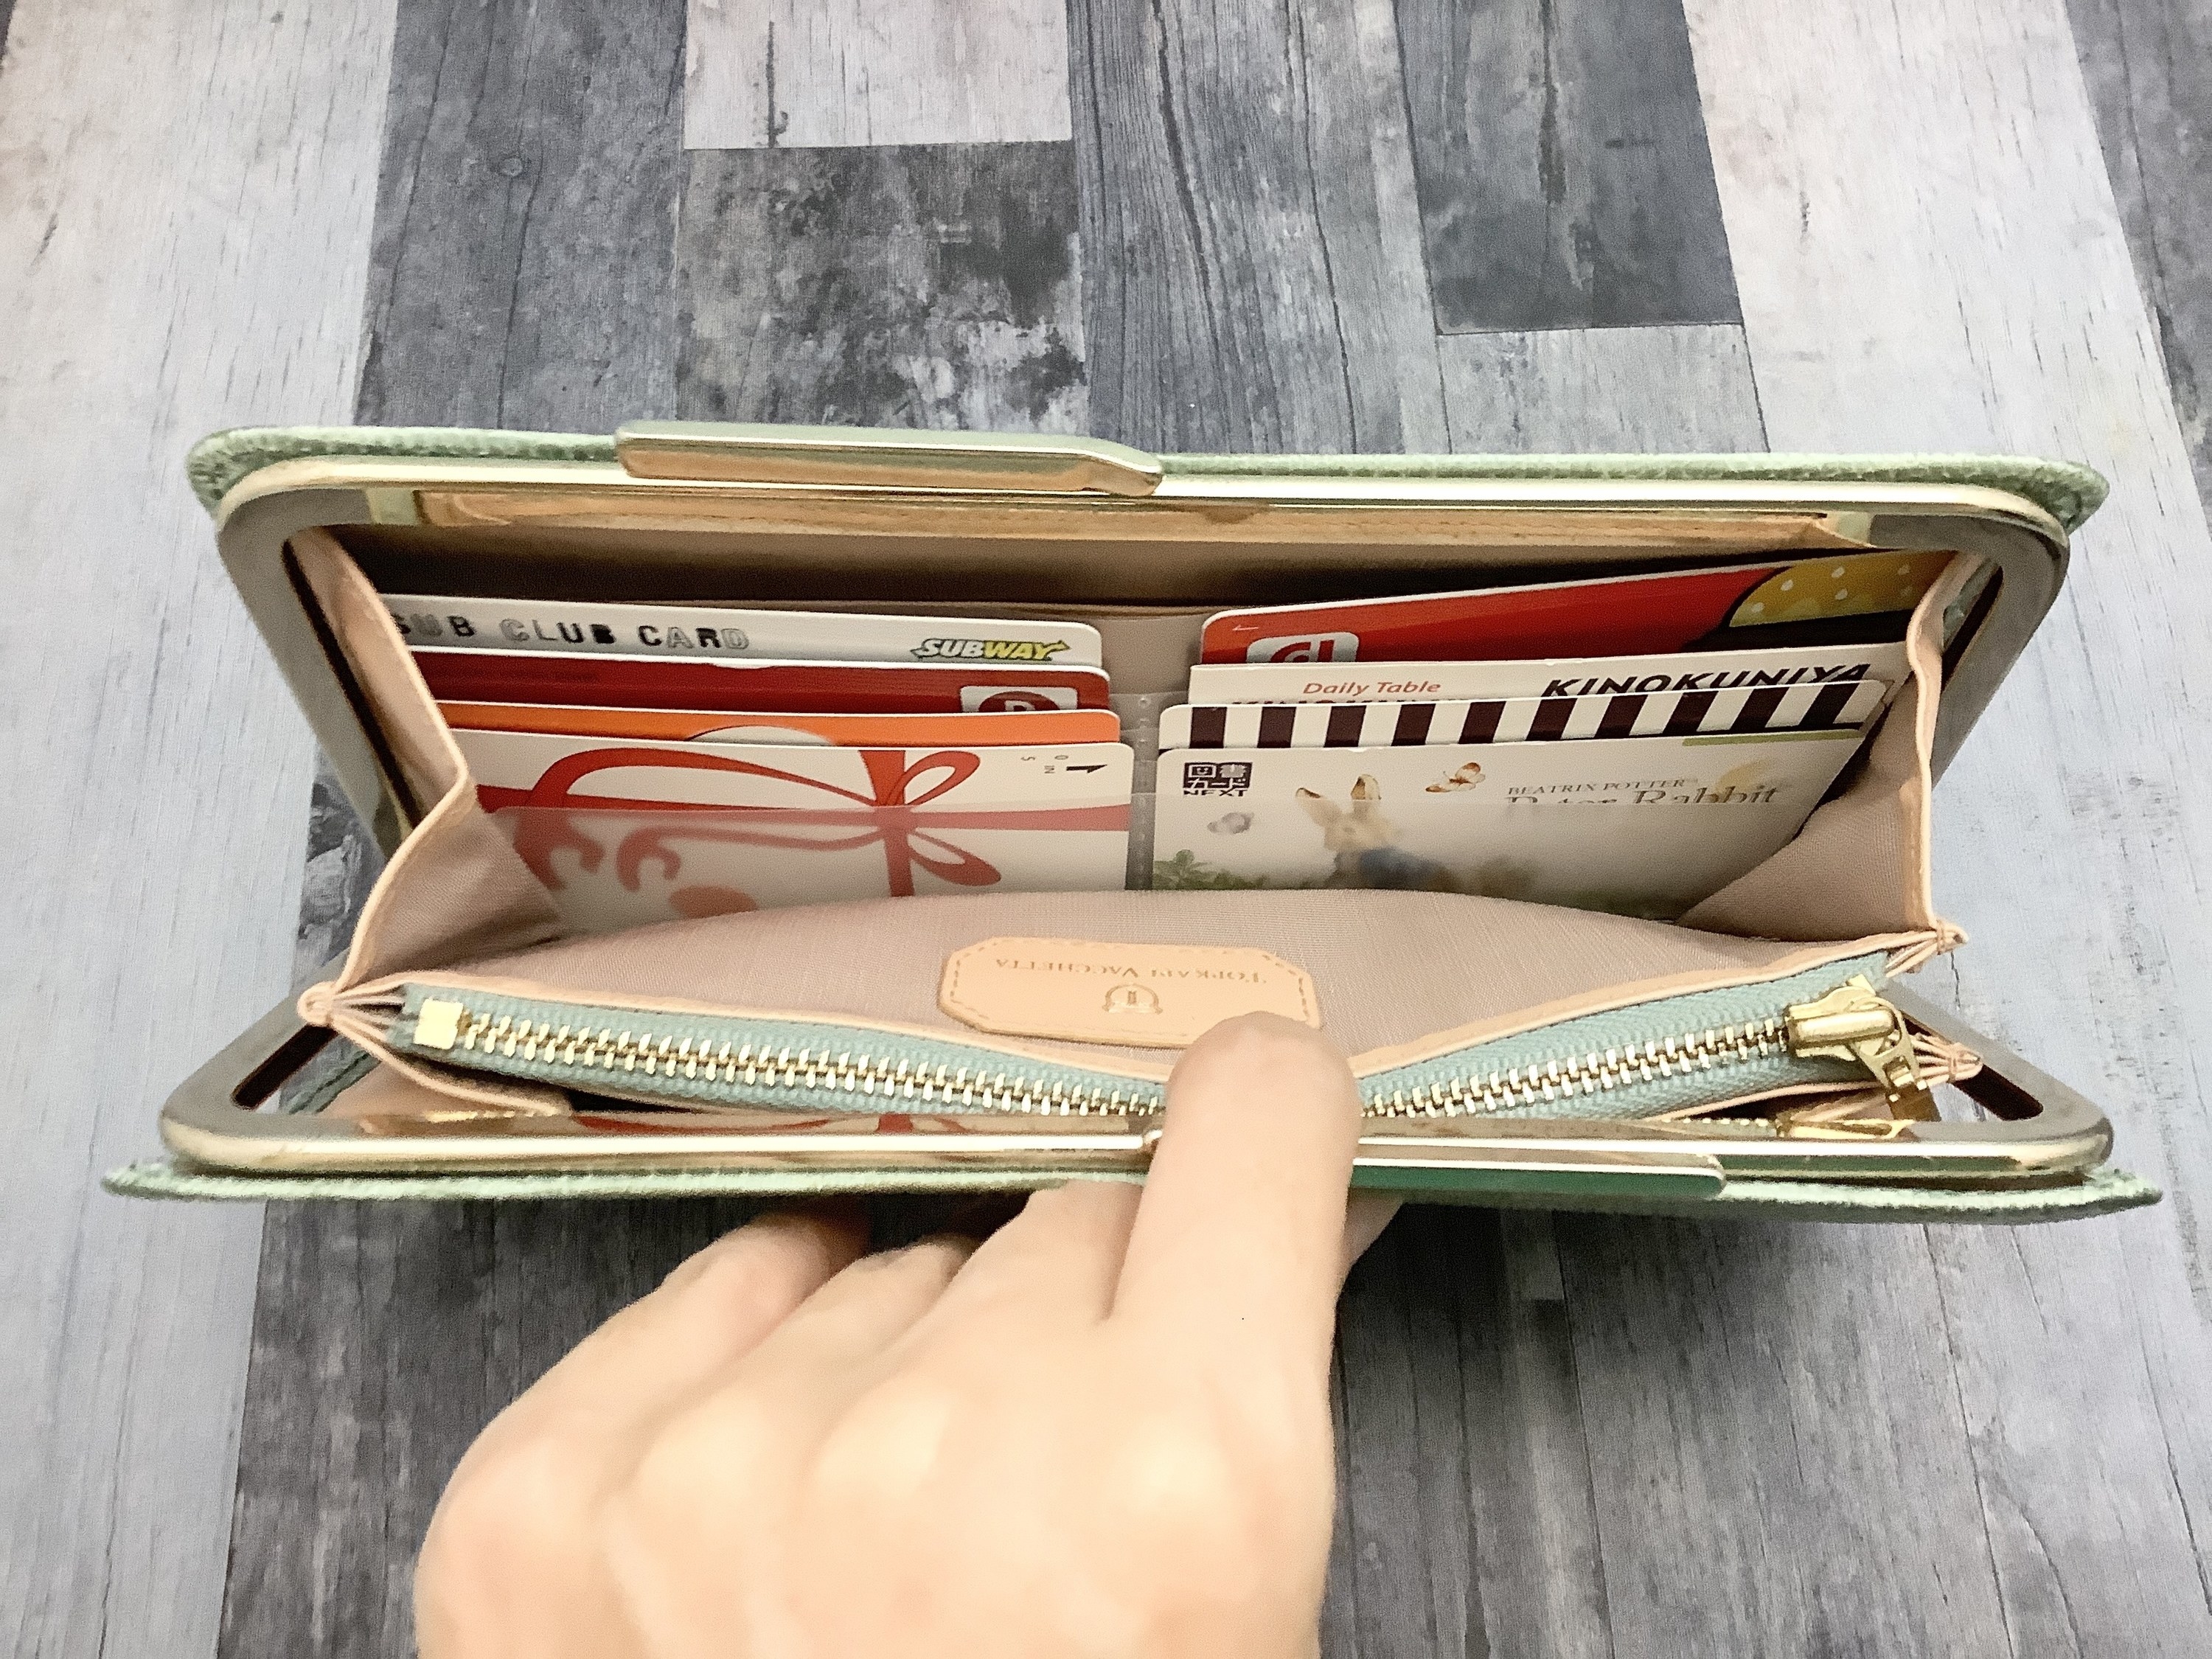 セリアさん、ありがとう！財布の「カードごちゃごちゃ問題」が110円で解決できるなんて…最高です。